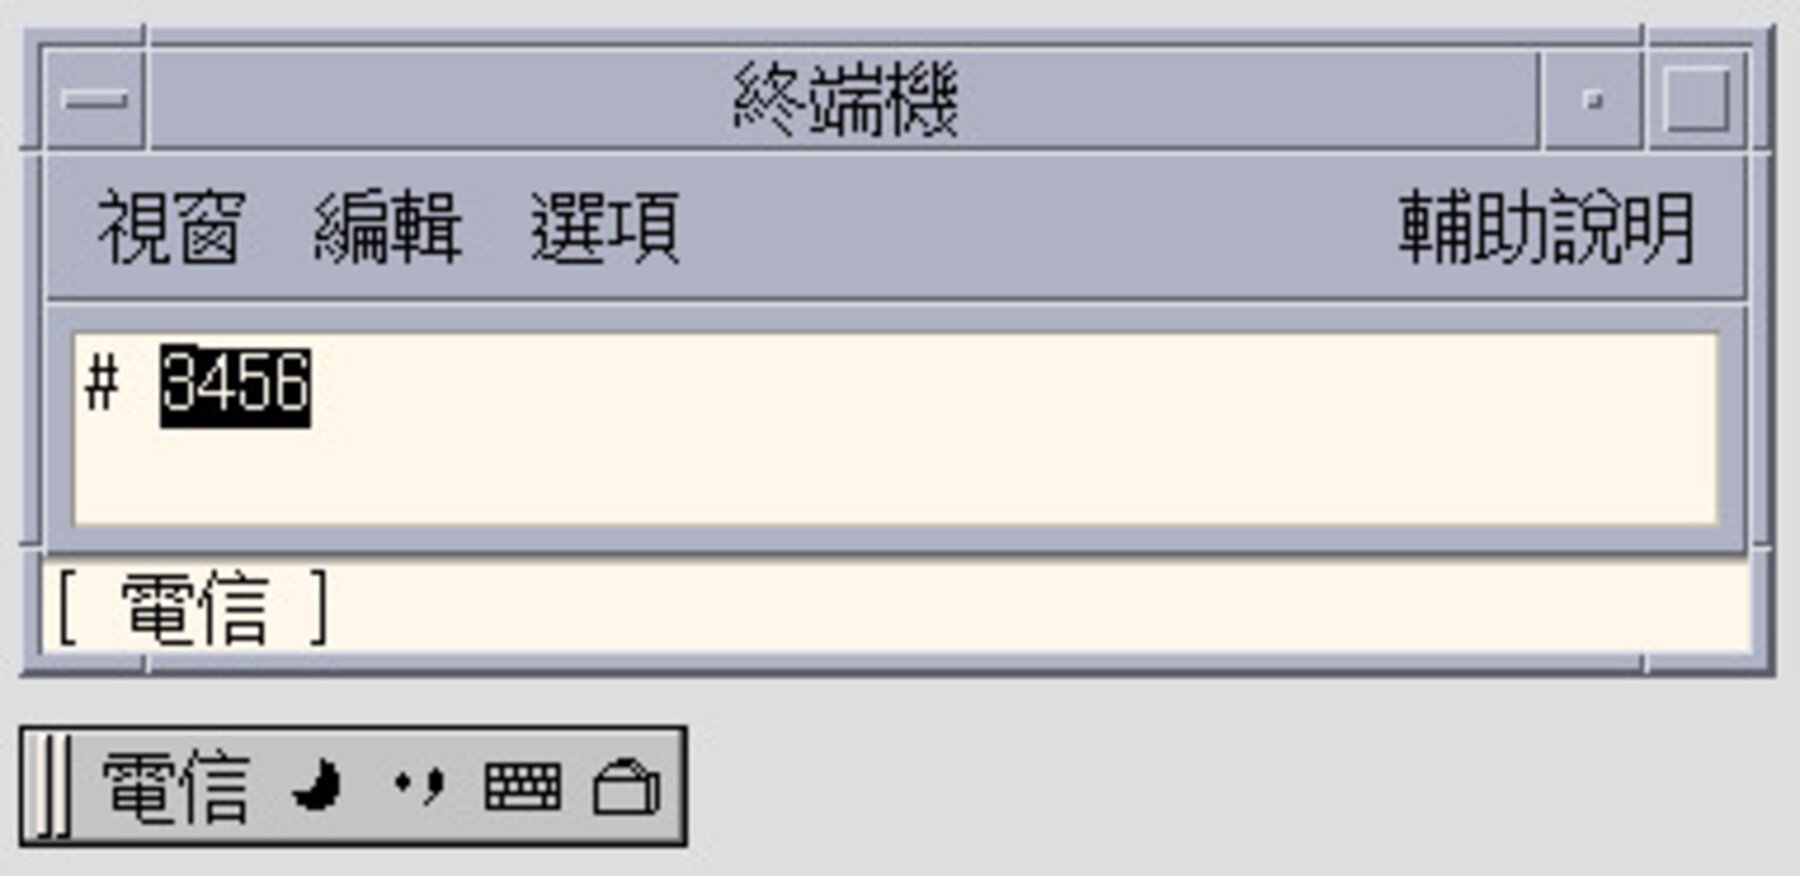 Telecodes Name được mã hoá từ các ký tự Trung Quốc